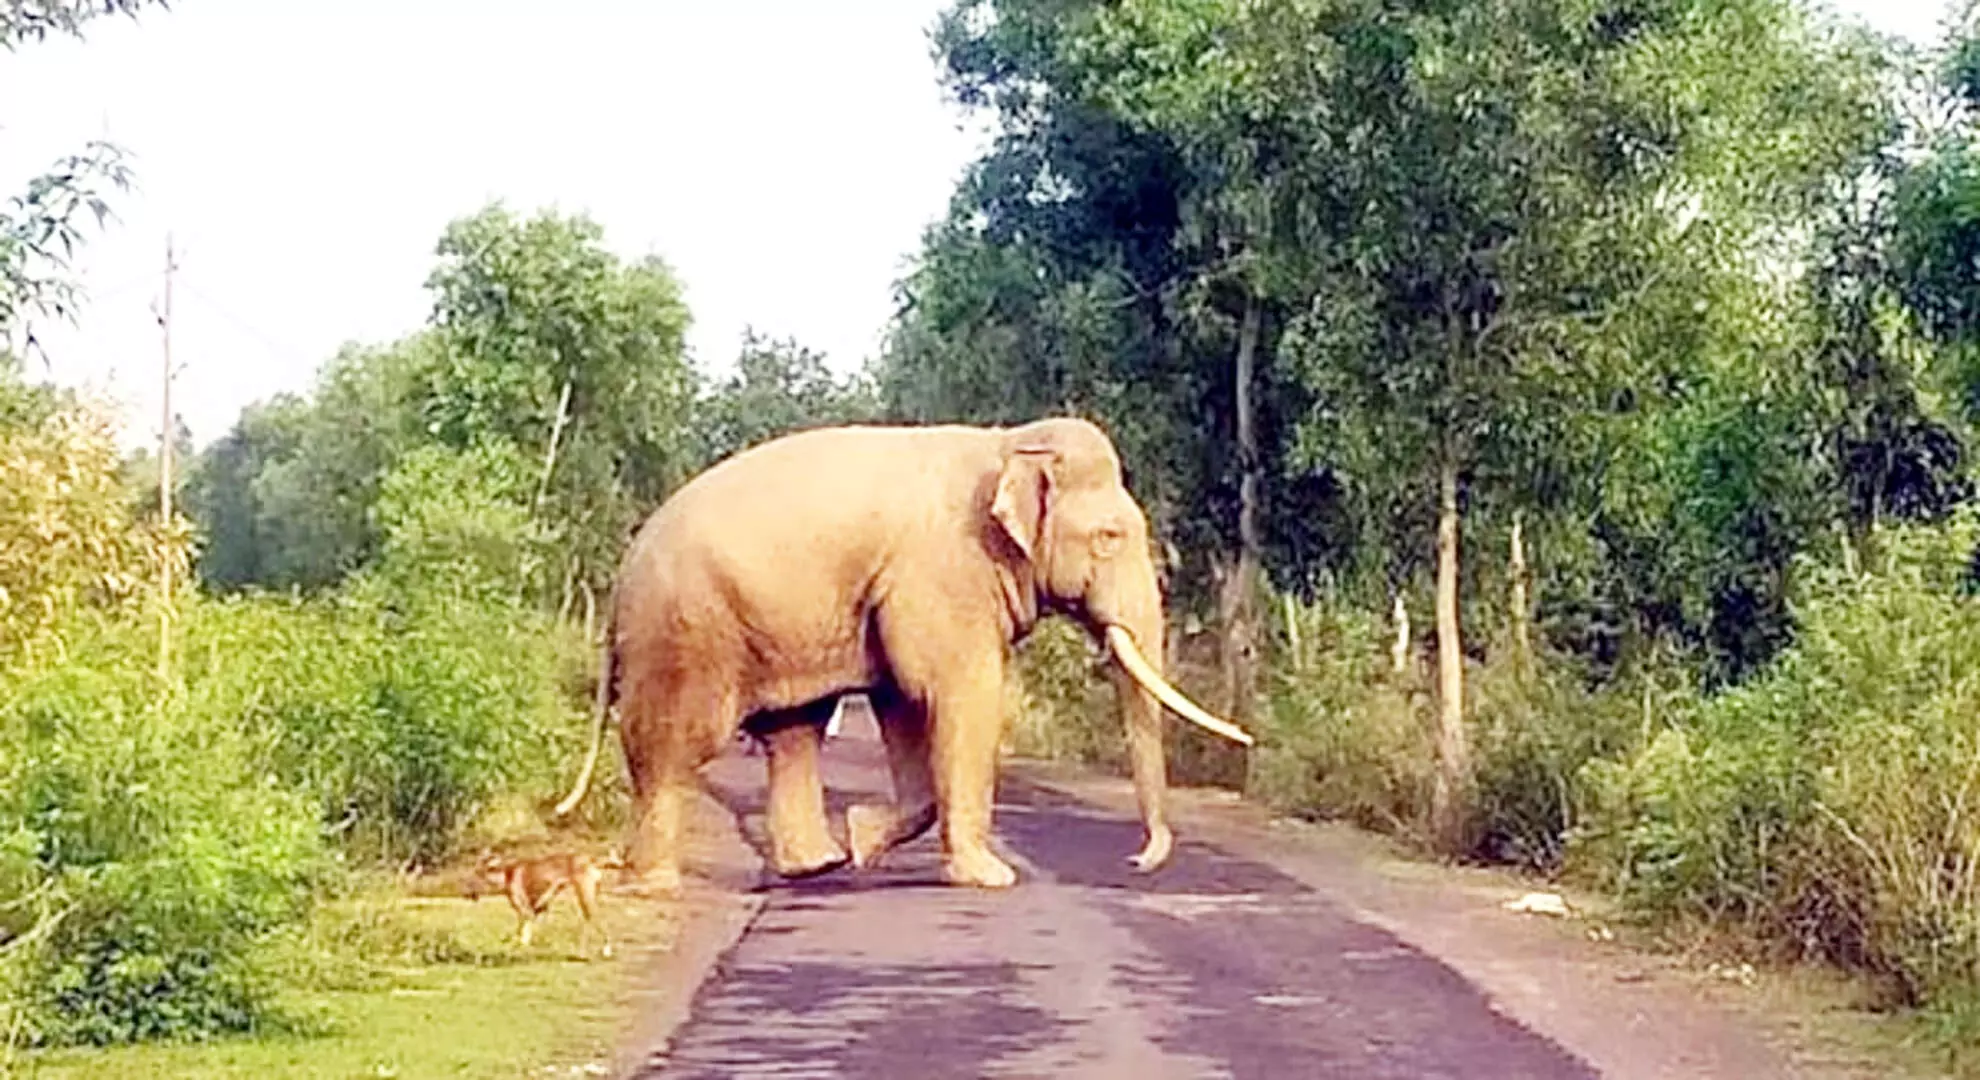 मलप्पुरम के वायनाड की सीमा से लगे जंगल में जंगली हाथी ने आदिवासी महिला की हत्या कर दी